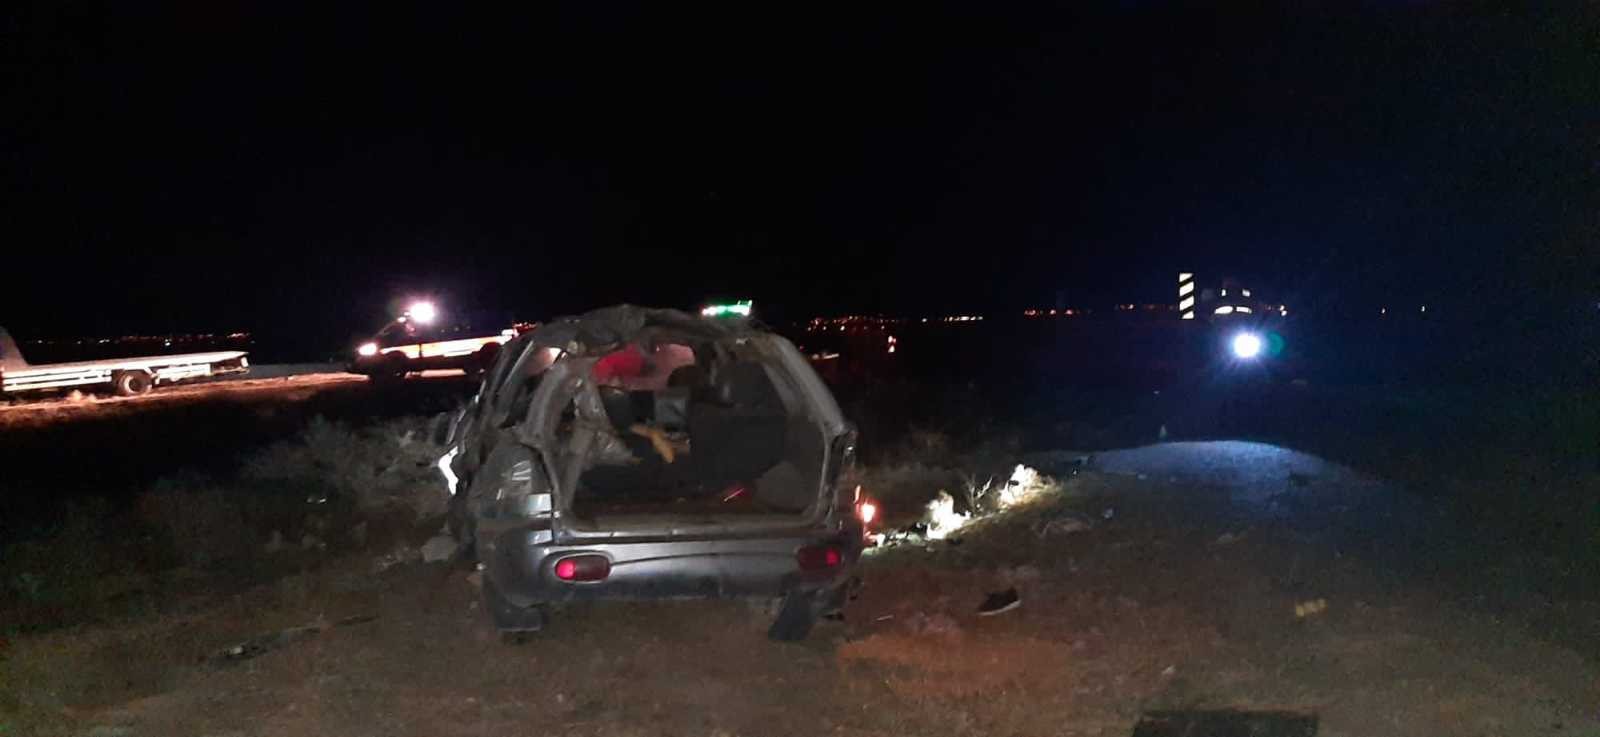 14 yaşındaki çocuğun kullandığı otomobil kaza yaptı 1 kişi öldü, 4 kişi yaralandı #afyonkarahisar